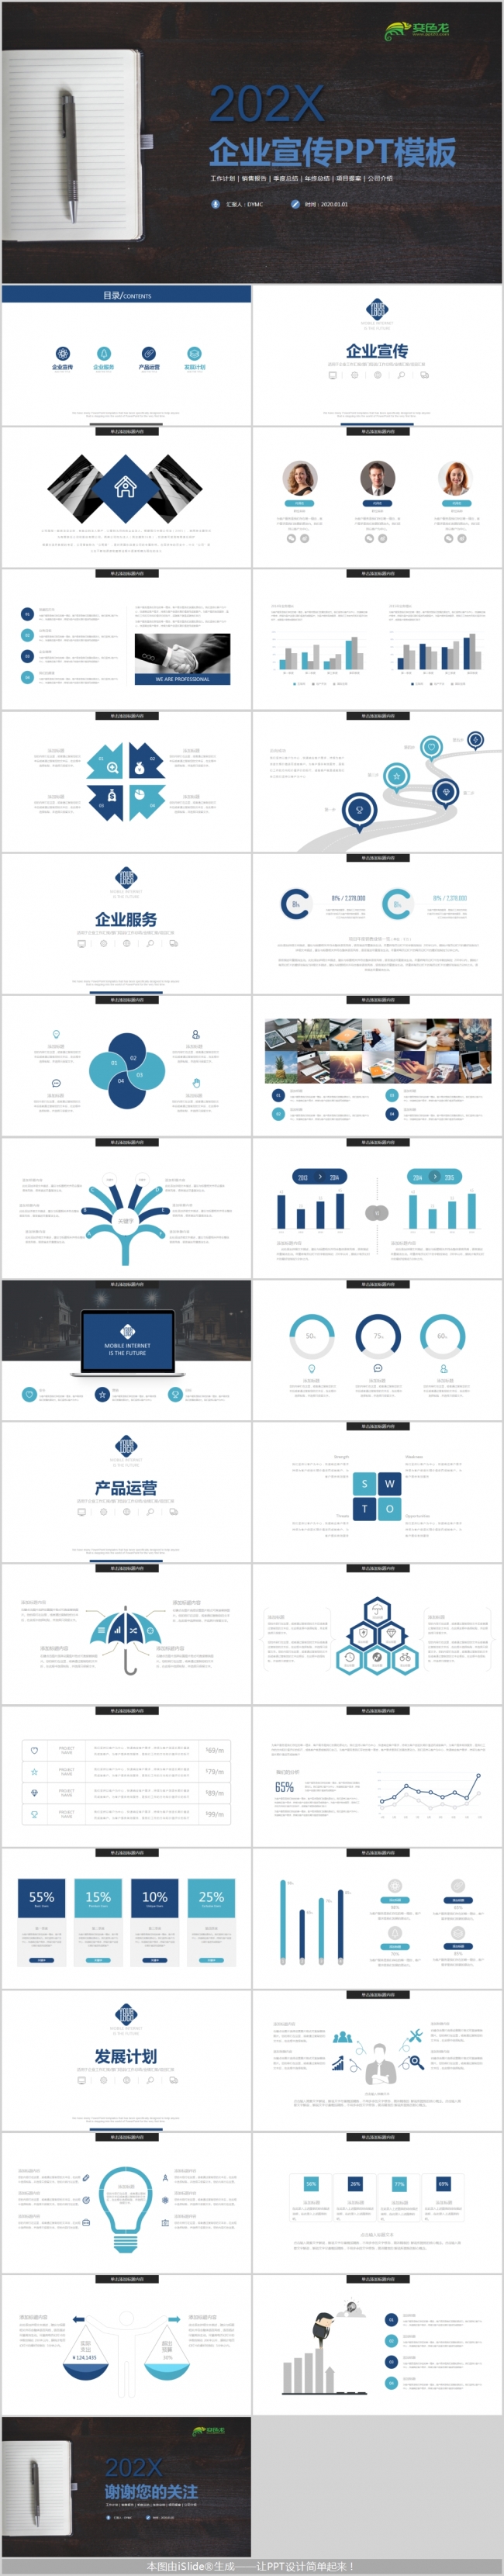 极简蓝色公司企业宣传计划销售报告通用PPT模板